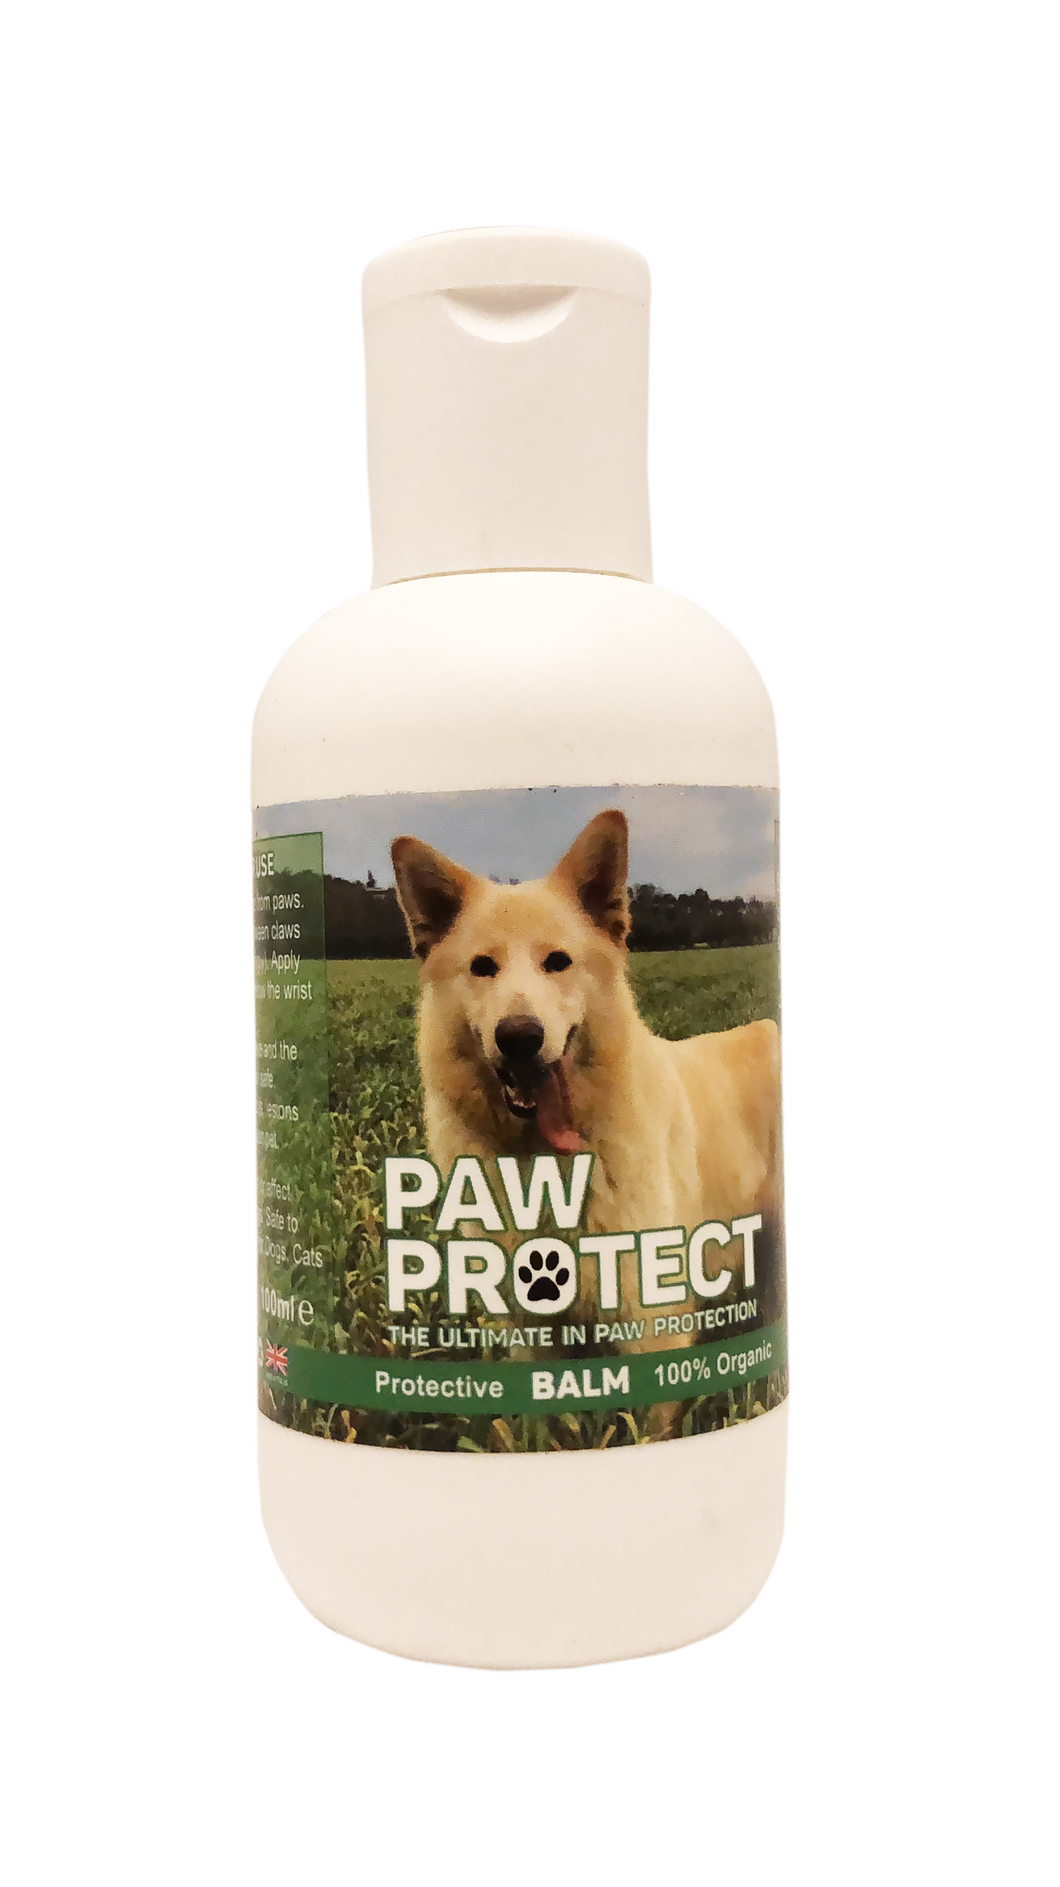 Paw Protect – Organic Protective Dog Balm 100ml